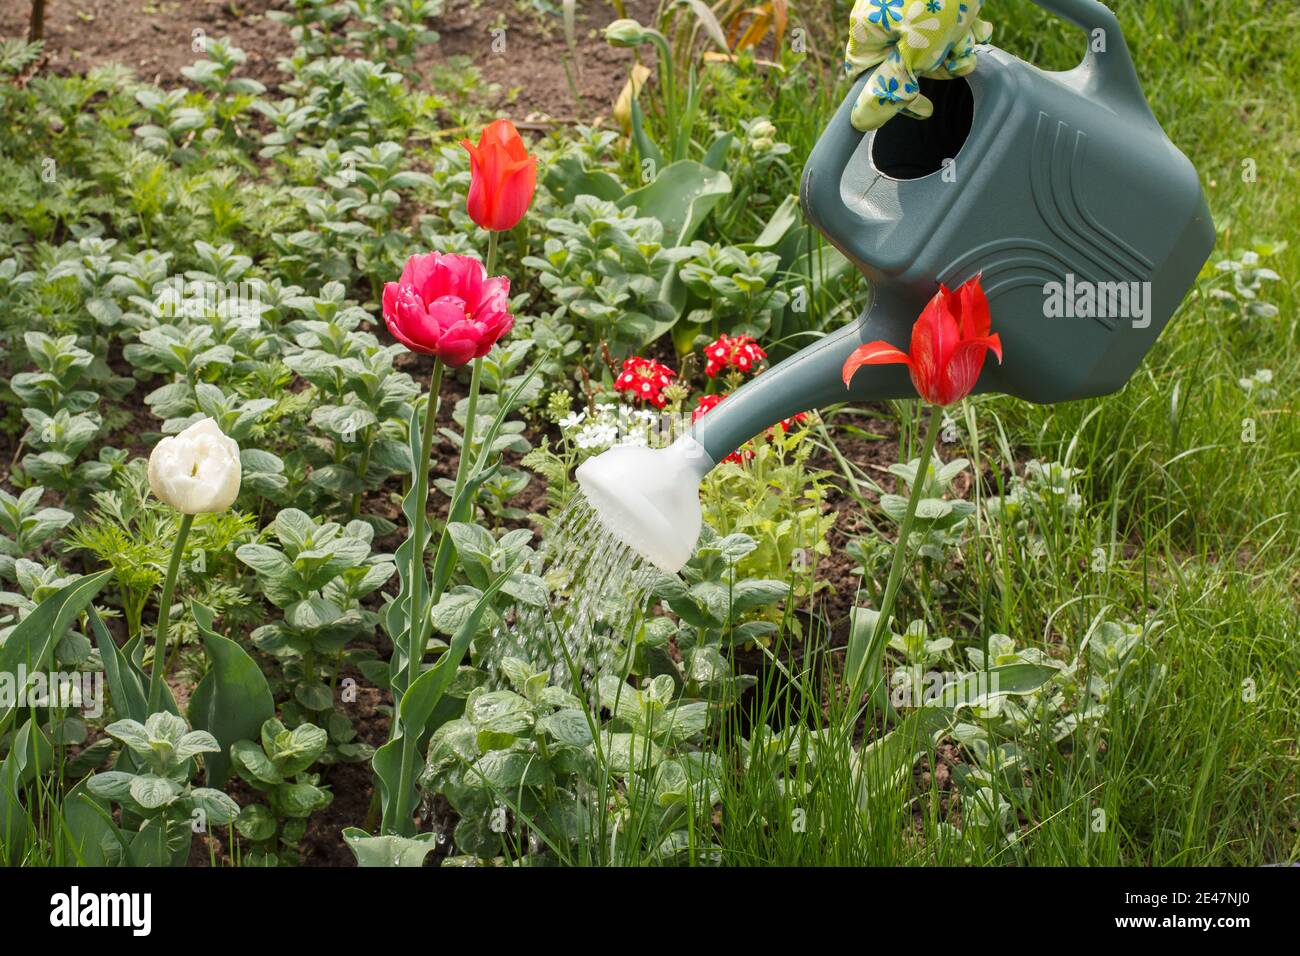 Les tulipes fleuris sont arrosées avec un arrosoir en plastique dans le jardin. Banque D'Images